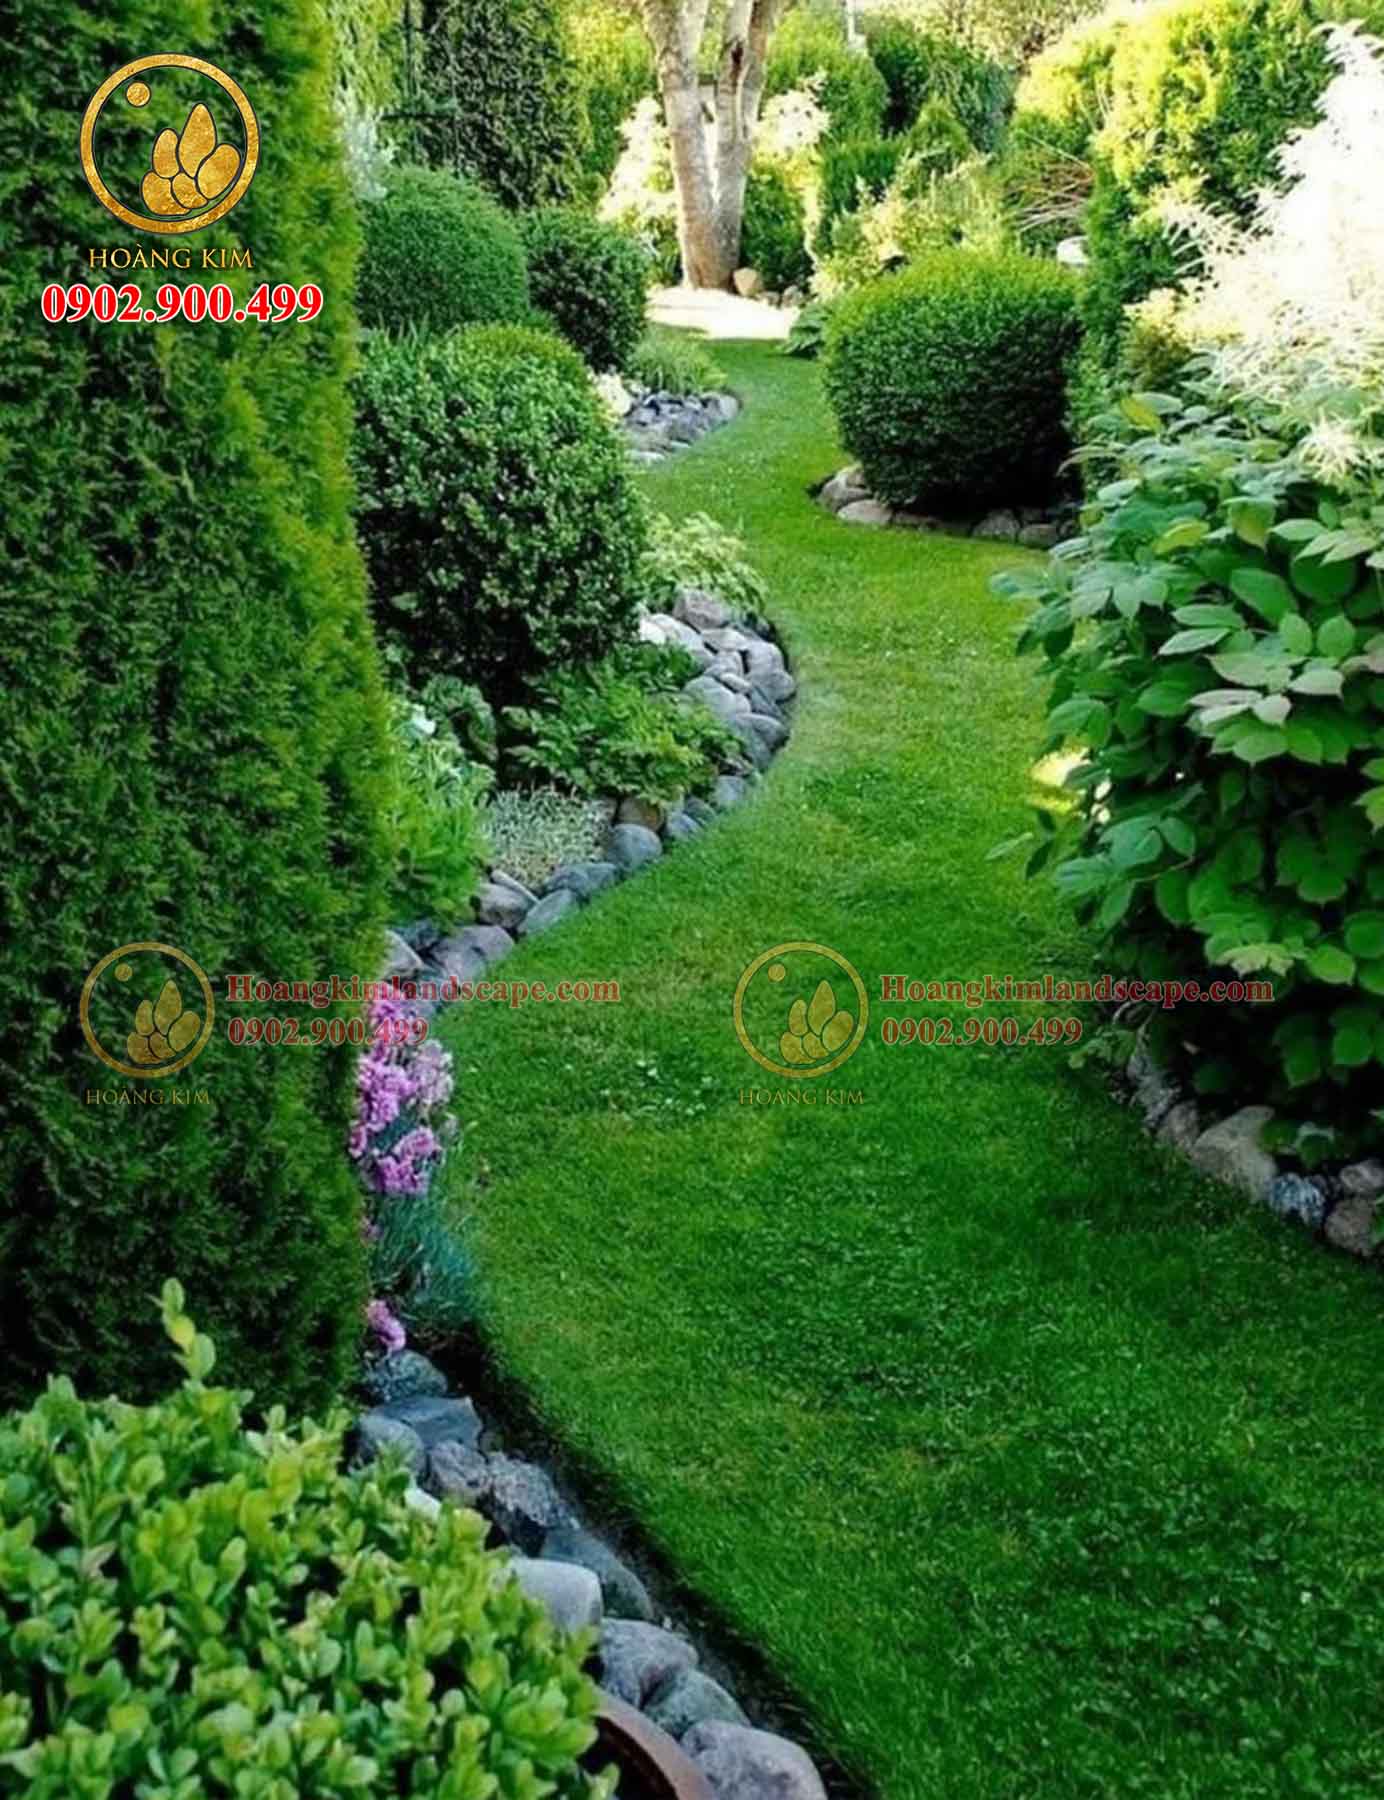 Thiết kế sân vườn với nhiều cây xanh và cảnh quan thiên nhiên để tạo ra được các ion giúp cuộc sống con người cân bằng và hoàn hảo hơn